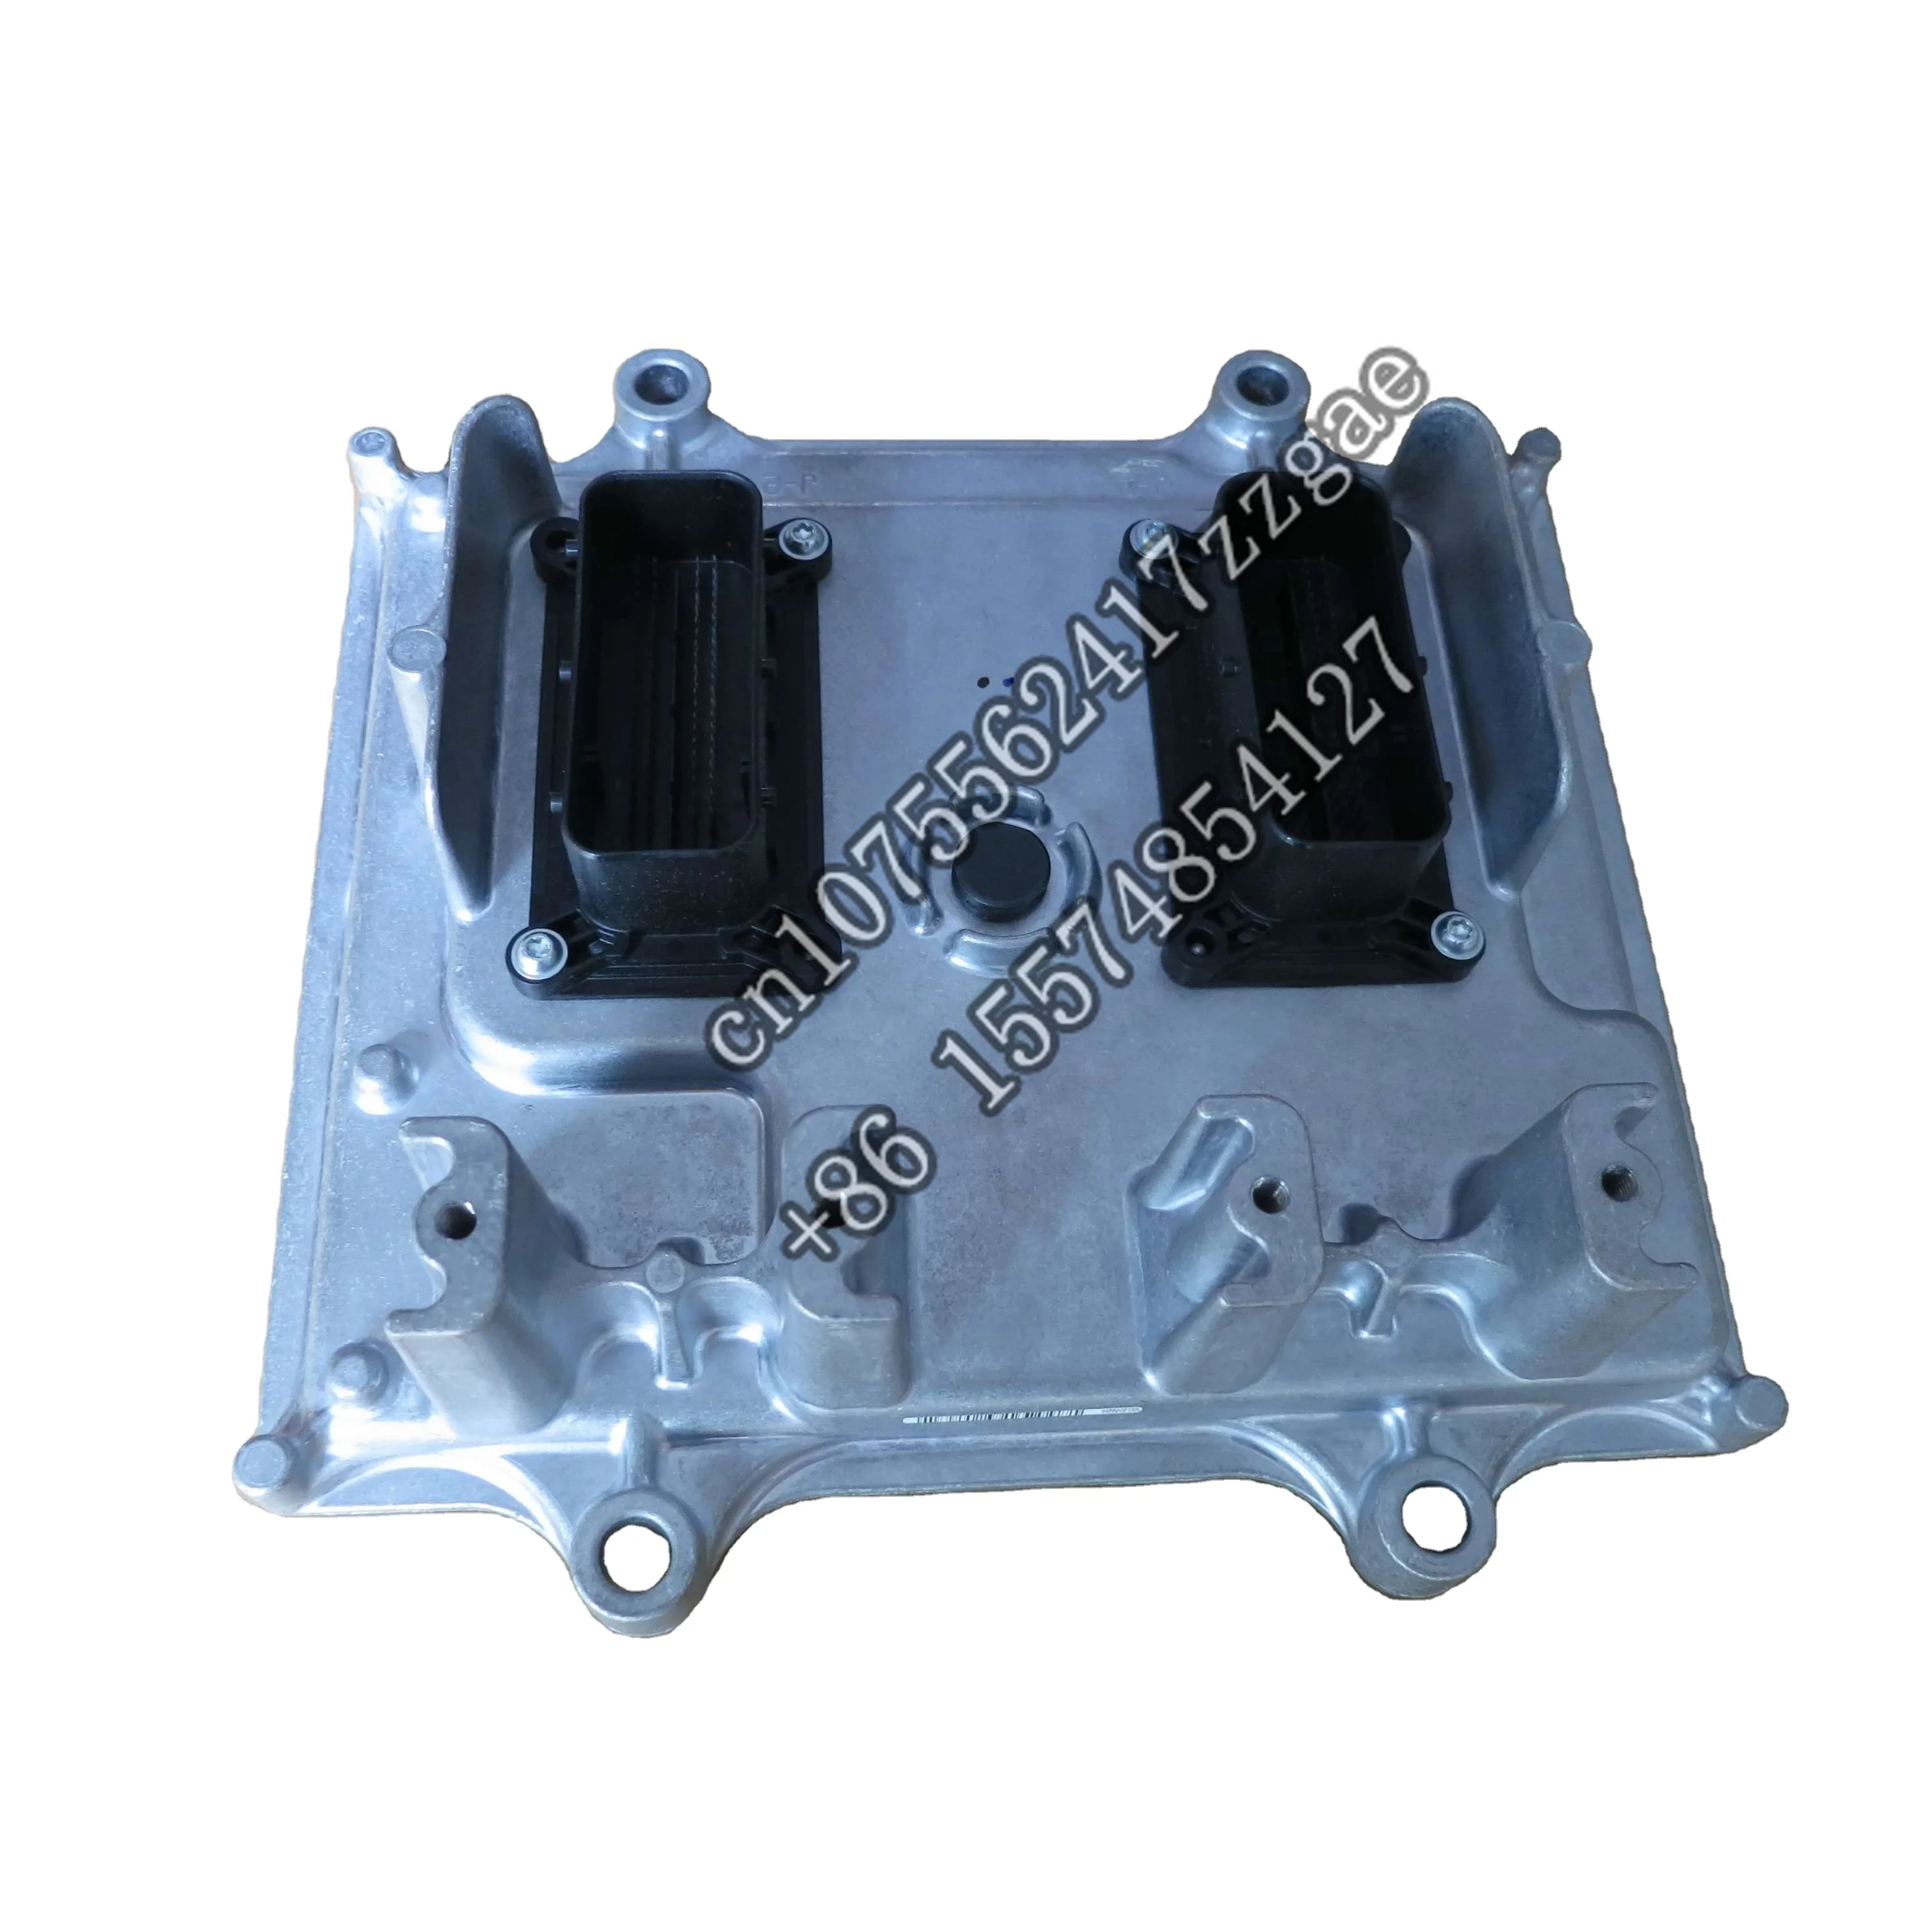 

Suitable for Diesel Engine Parts Cm2670 Ecu Ecm Electronic Control Unit 4354589 Electronic Control Module